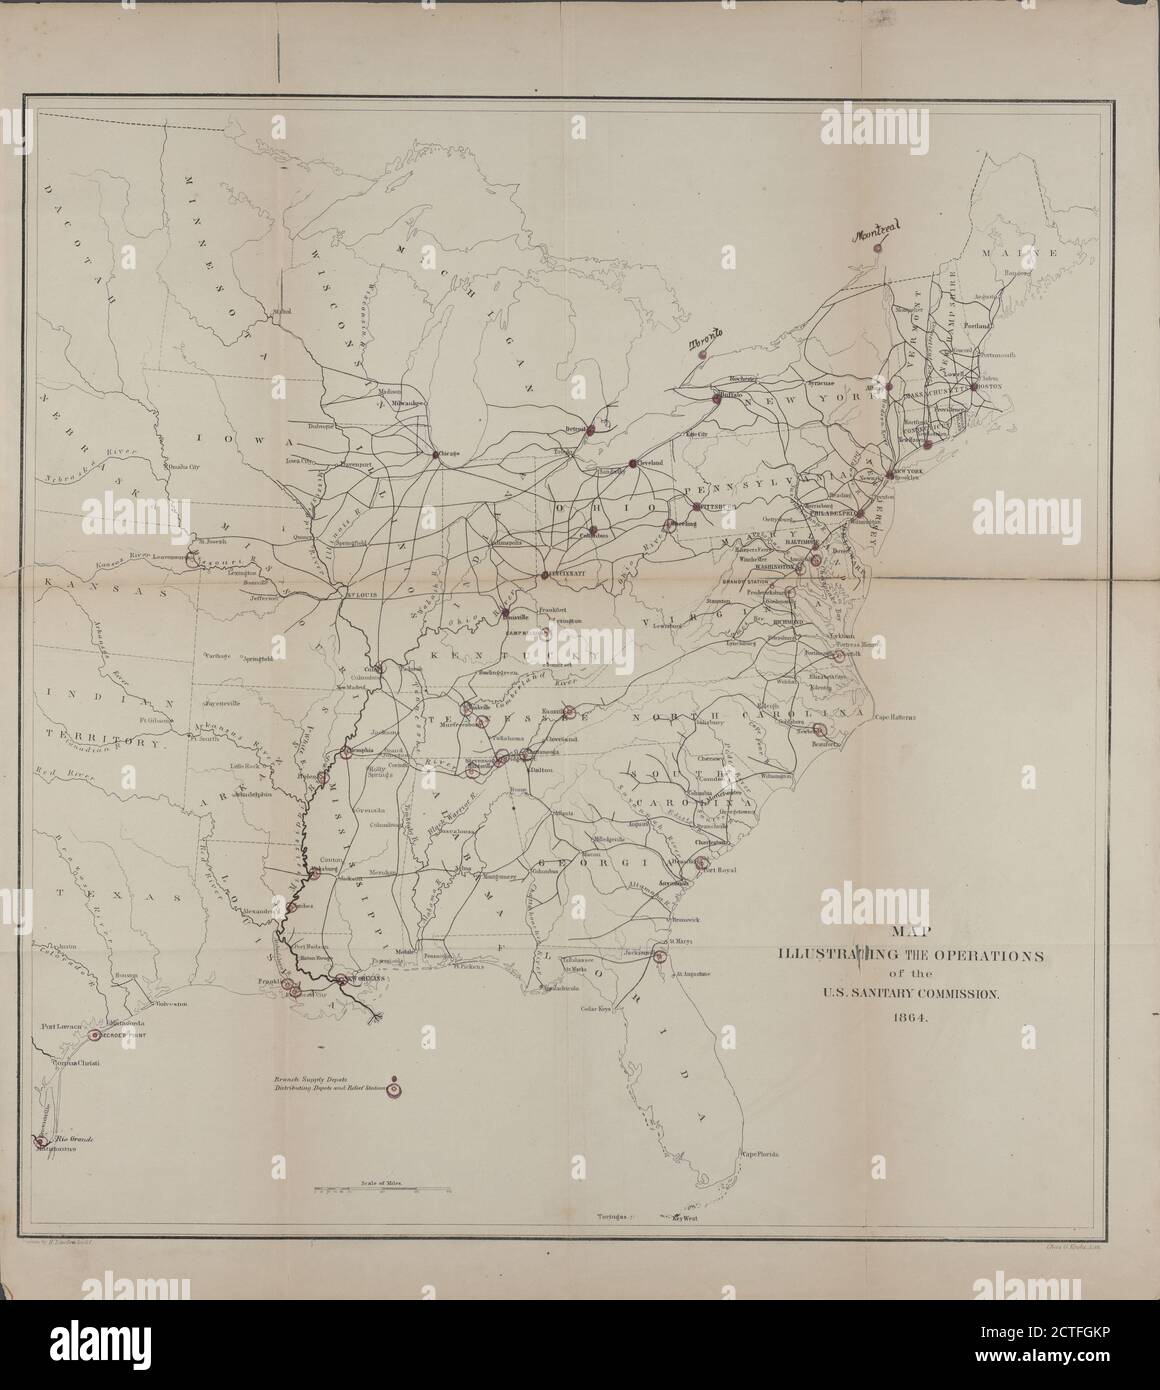 Mappa che illustra le operazioni della Commissione sanitaria degli Stati Uniti, cartografia, Mappe, 1864, Commissione sanitaria degli Stati Uniti, Krebs, Charles G., Lindenkohl, H. (Henry Foto Stock